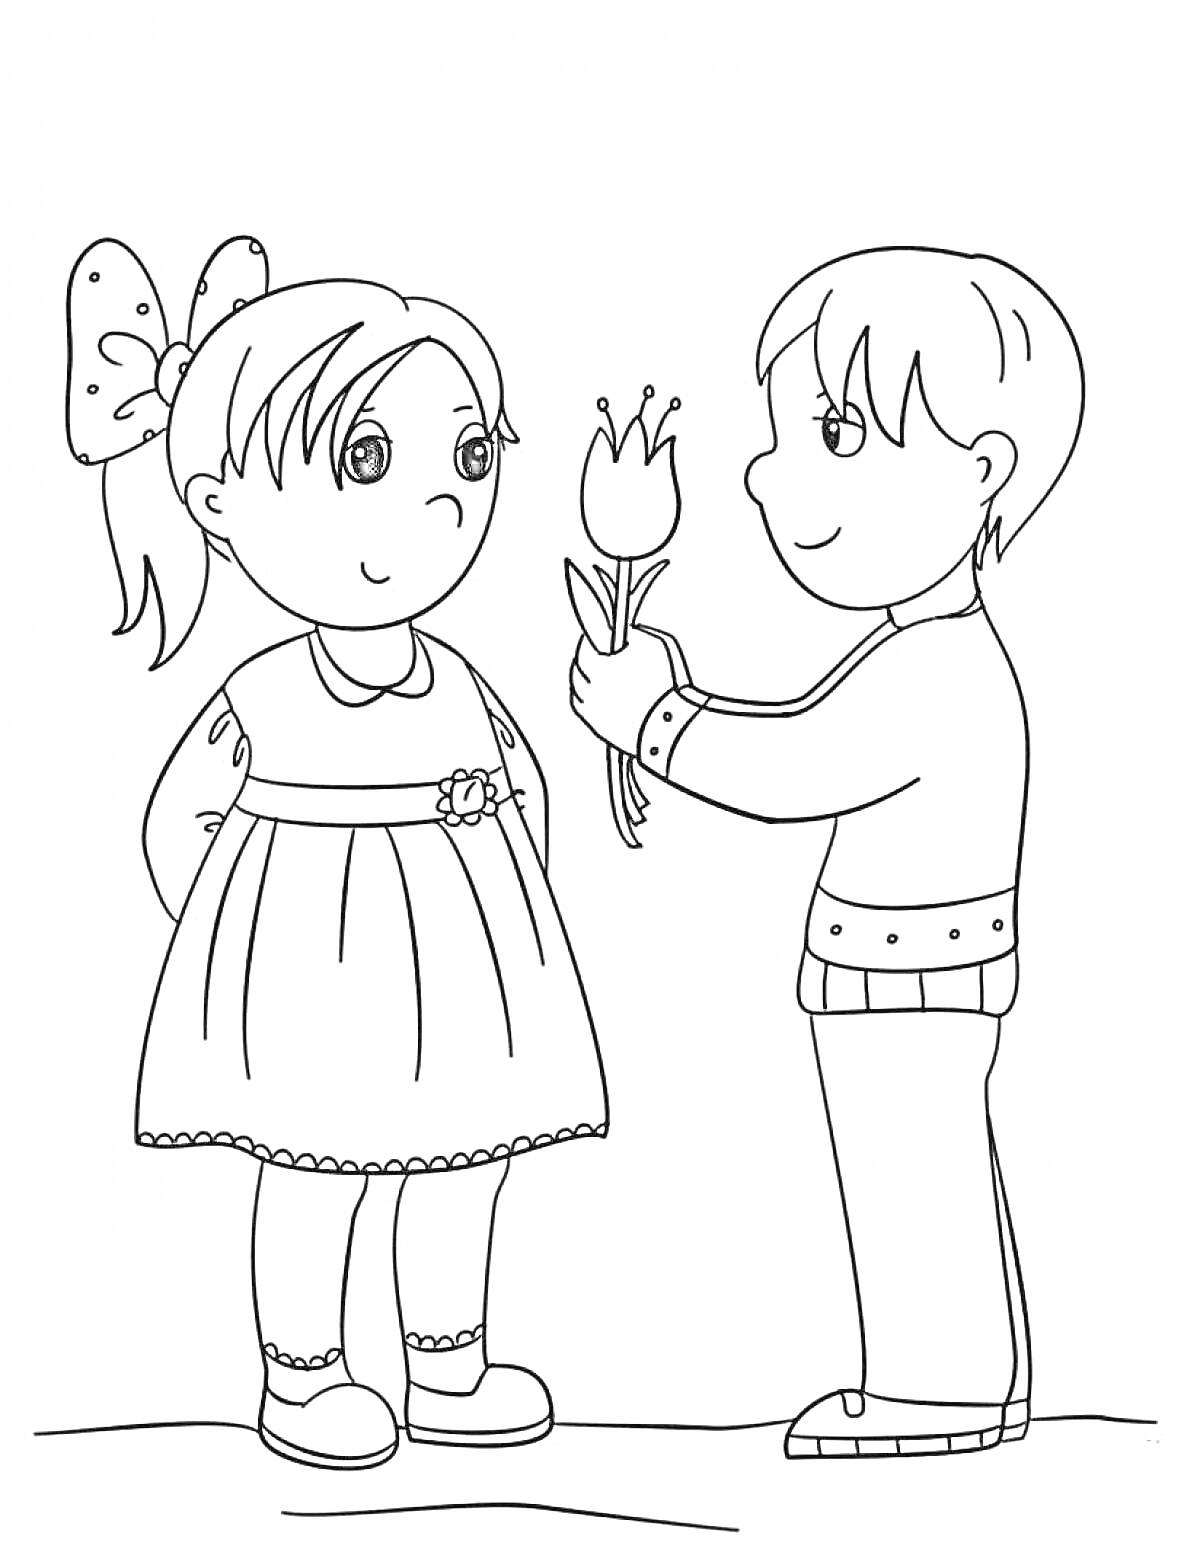 Раскраска Девочка и мальчик, мальчик дарит девочке цветок, девочка в платье с бантом